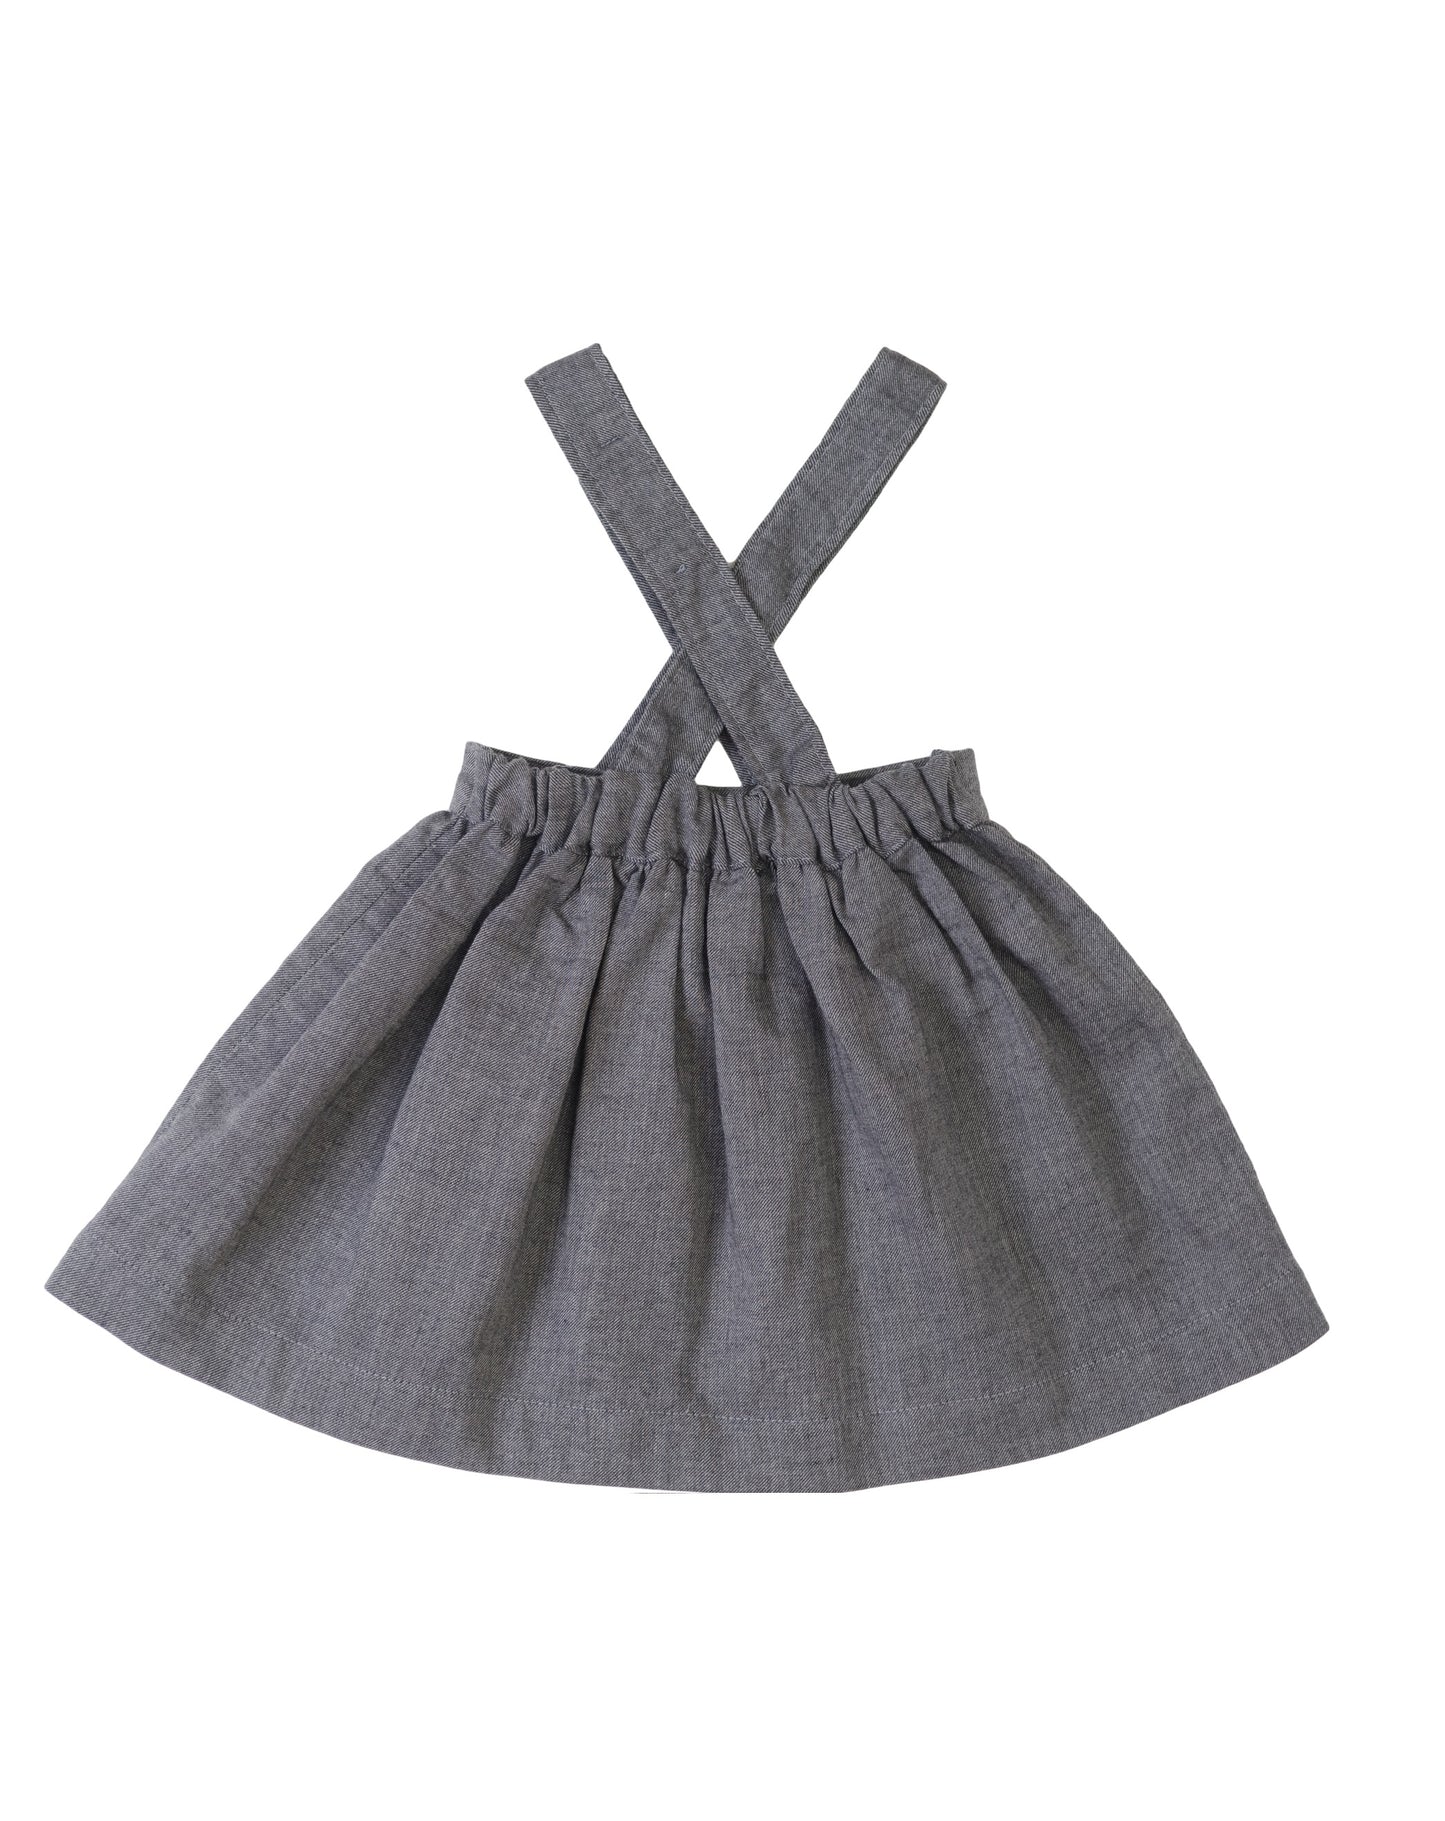 Pinafore Skirt Grey